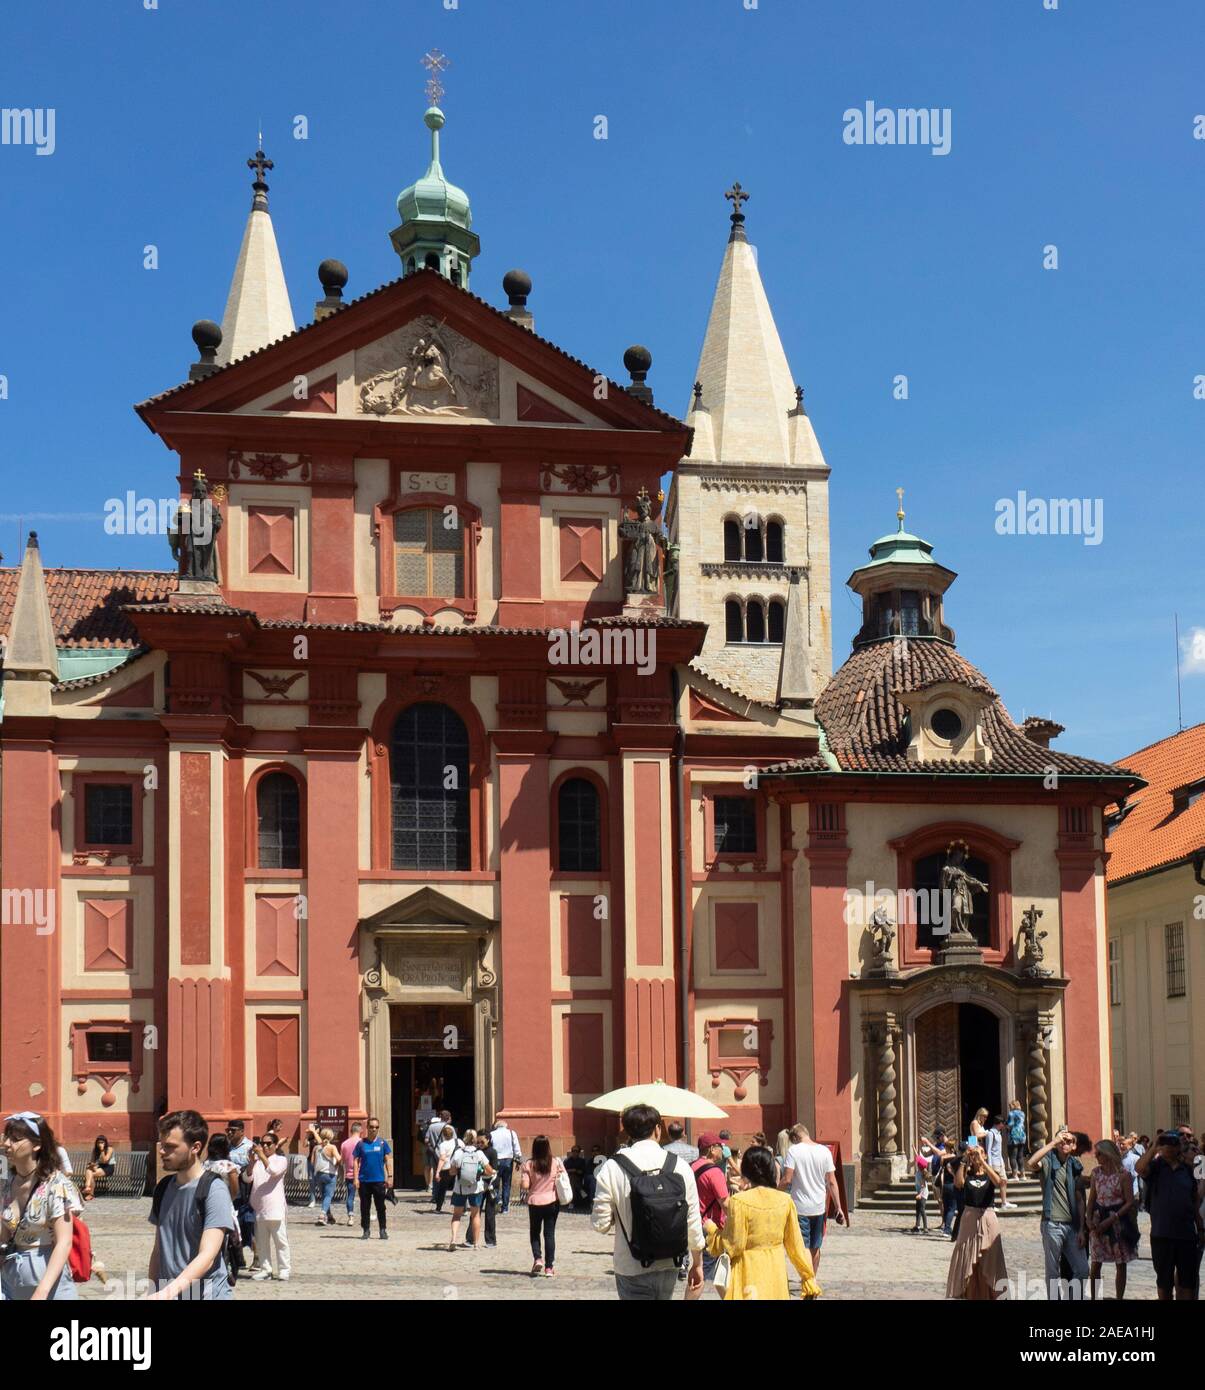 Basílica de San Jorge y los turistas en la Plaza de San Jorge Praga Castillo complejo Praga República Checa. Foto de stock